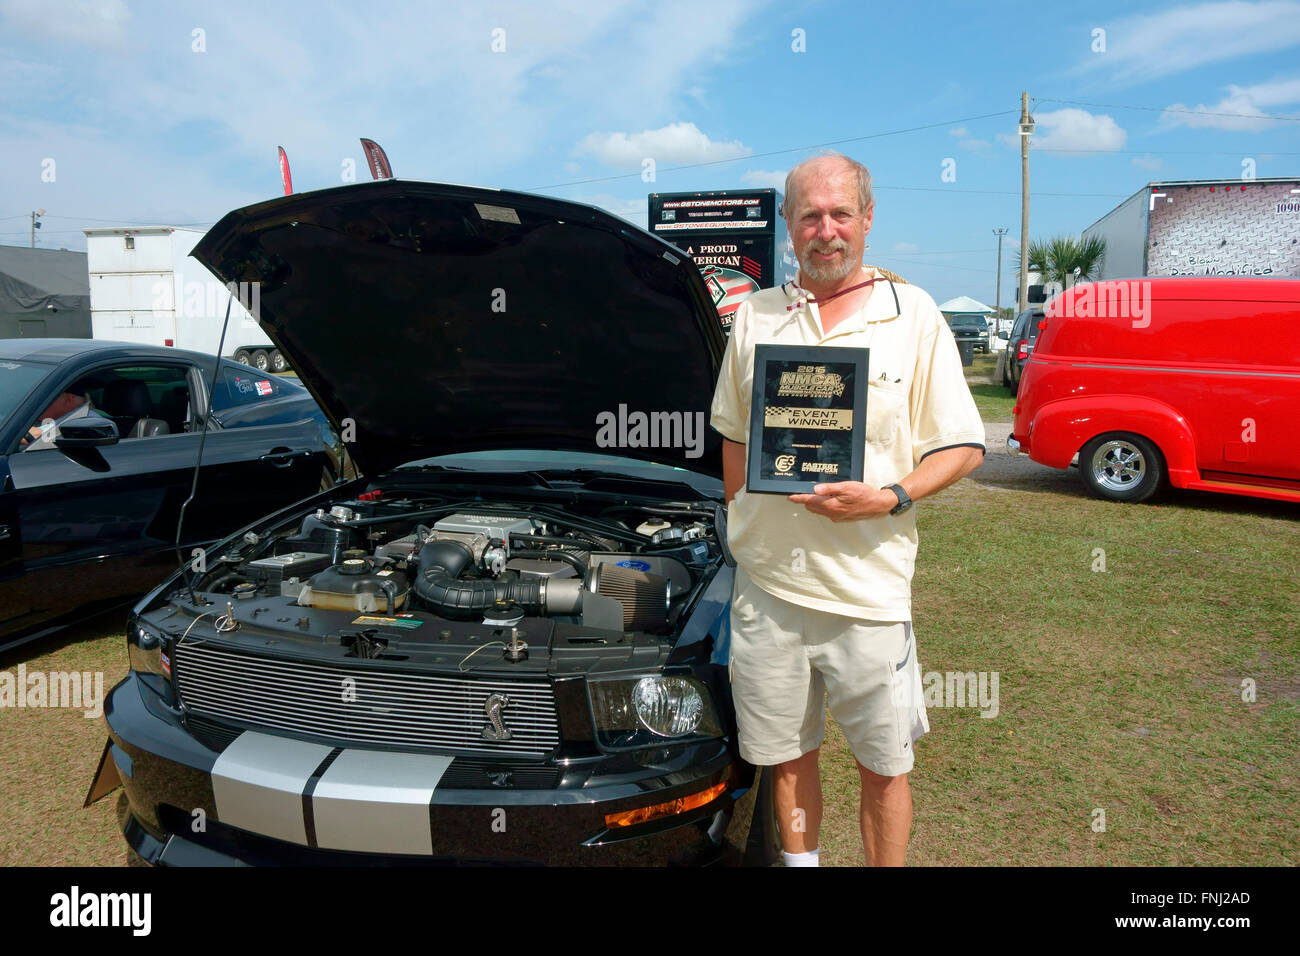 Ein Mann bei einer Autoshow, die hat den ersten Platz und hält seine Trophäe Gedenktafel neben seinem Auto Stockfoto